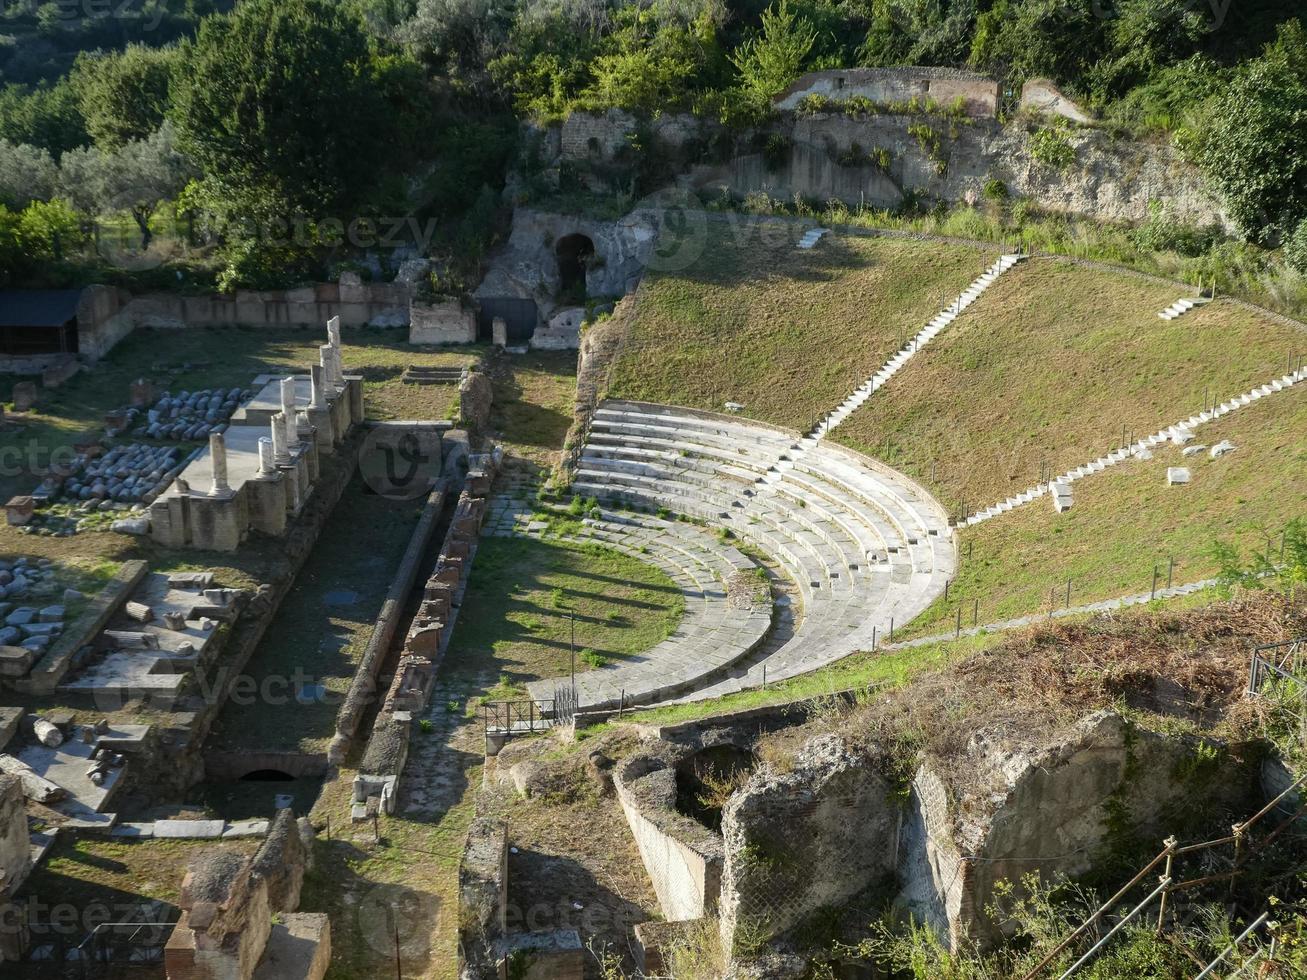 romersk teater i Sessa aurunca foto